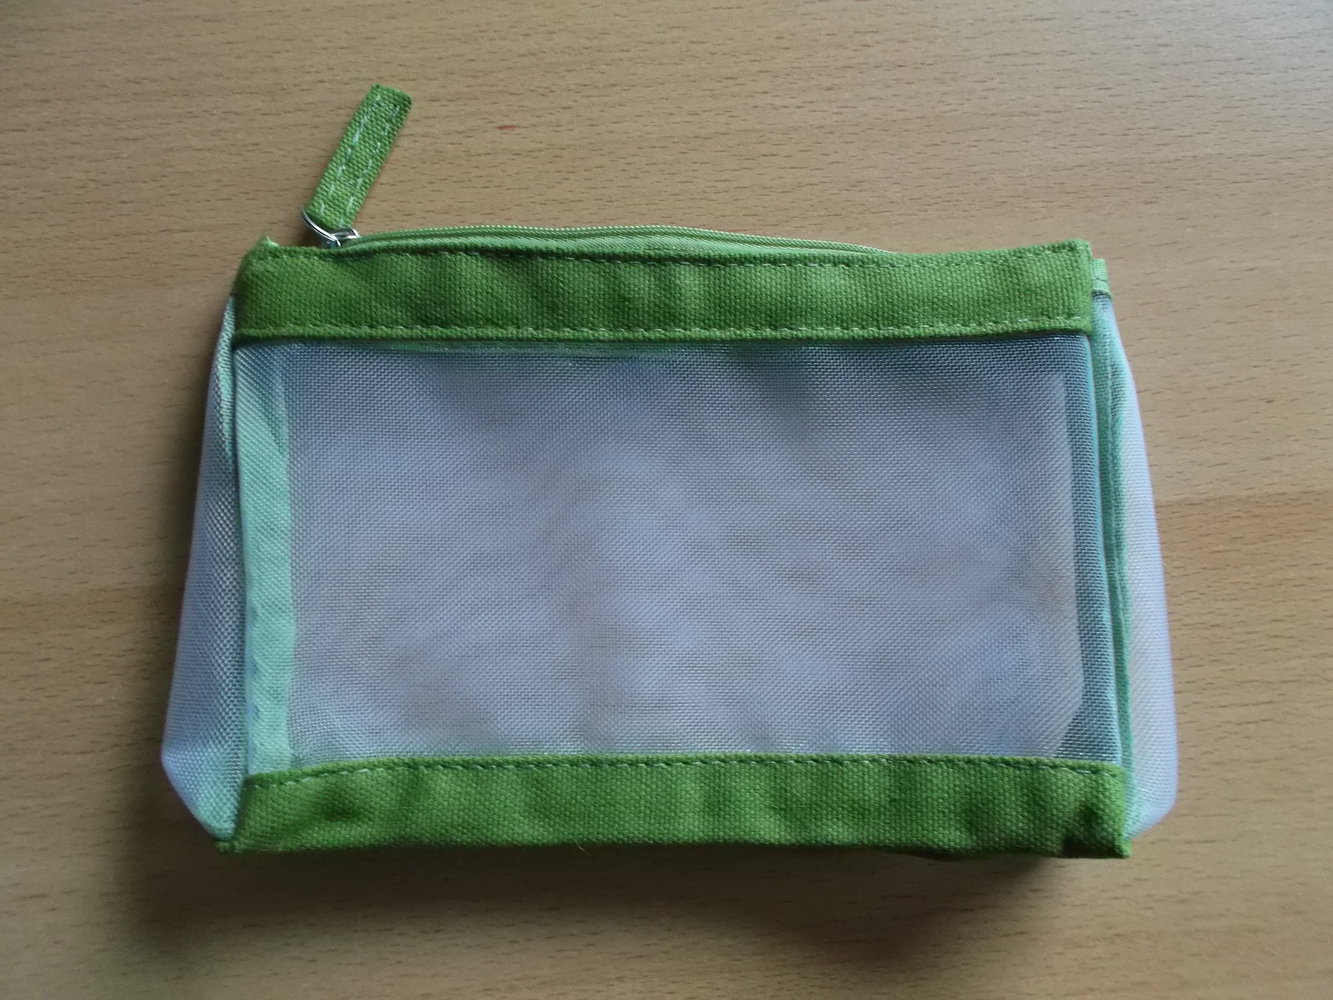 Tasche mit Reißverschluss von Yves Rocher, transparent und grün